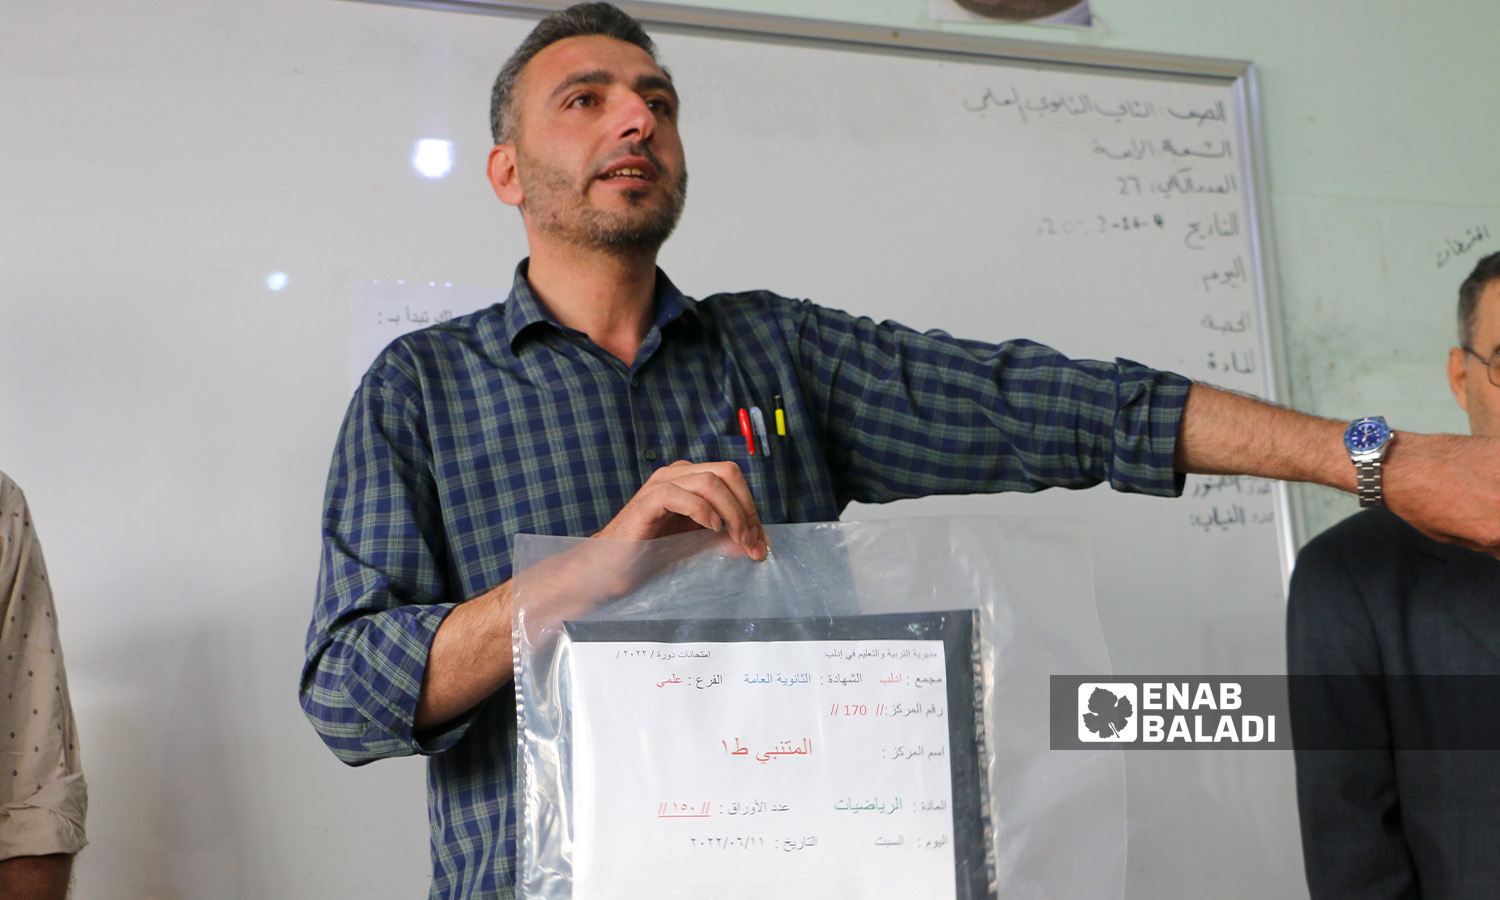 مدرّس يشرح للطلاب عن الامتحان في مدينة إدلب (عنب بلدي/ أنس الخولي)